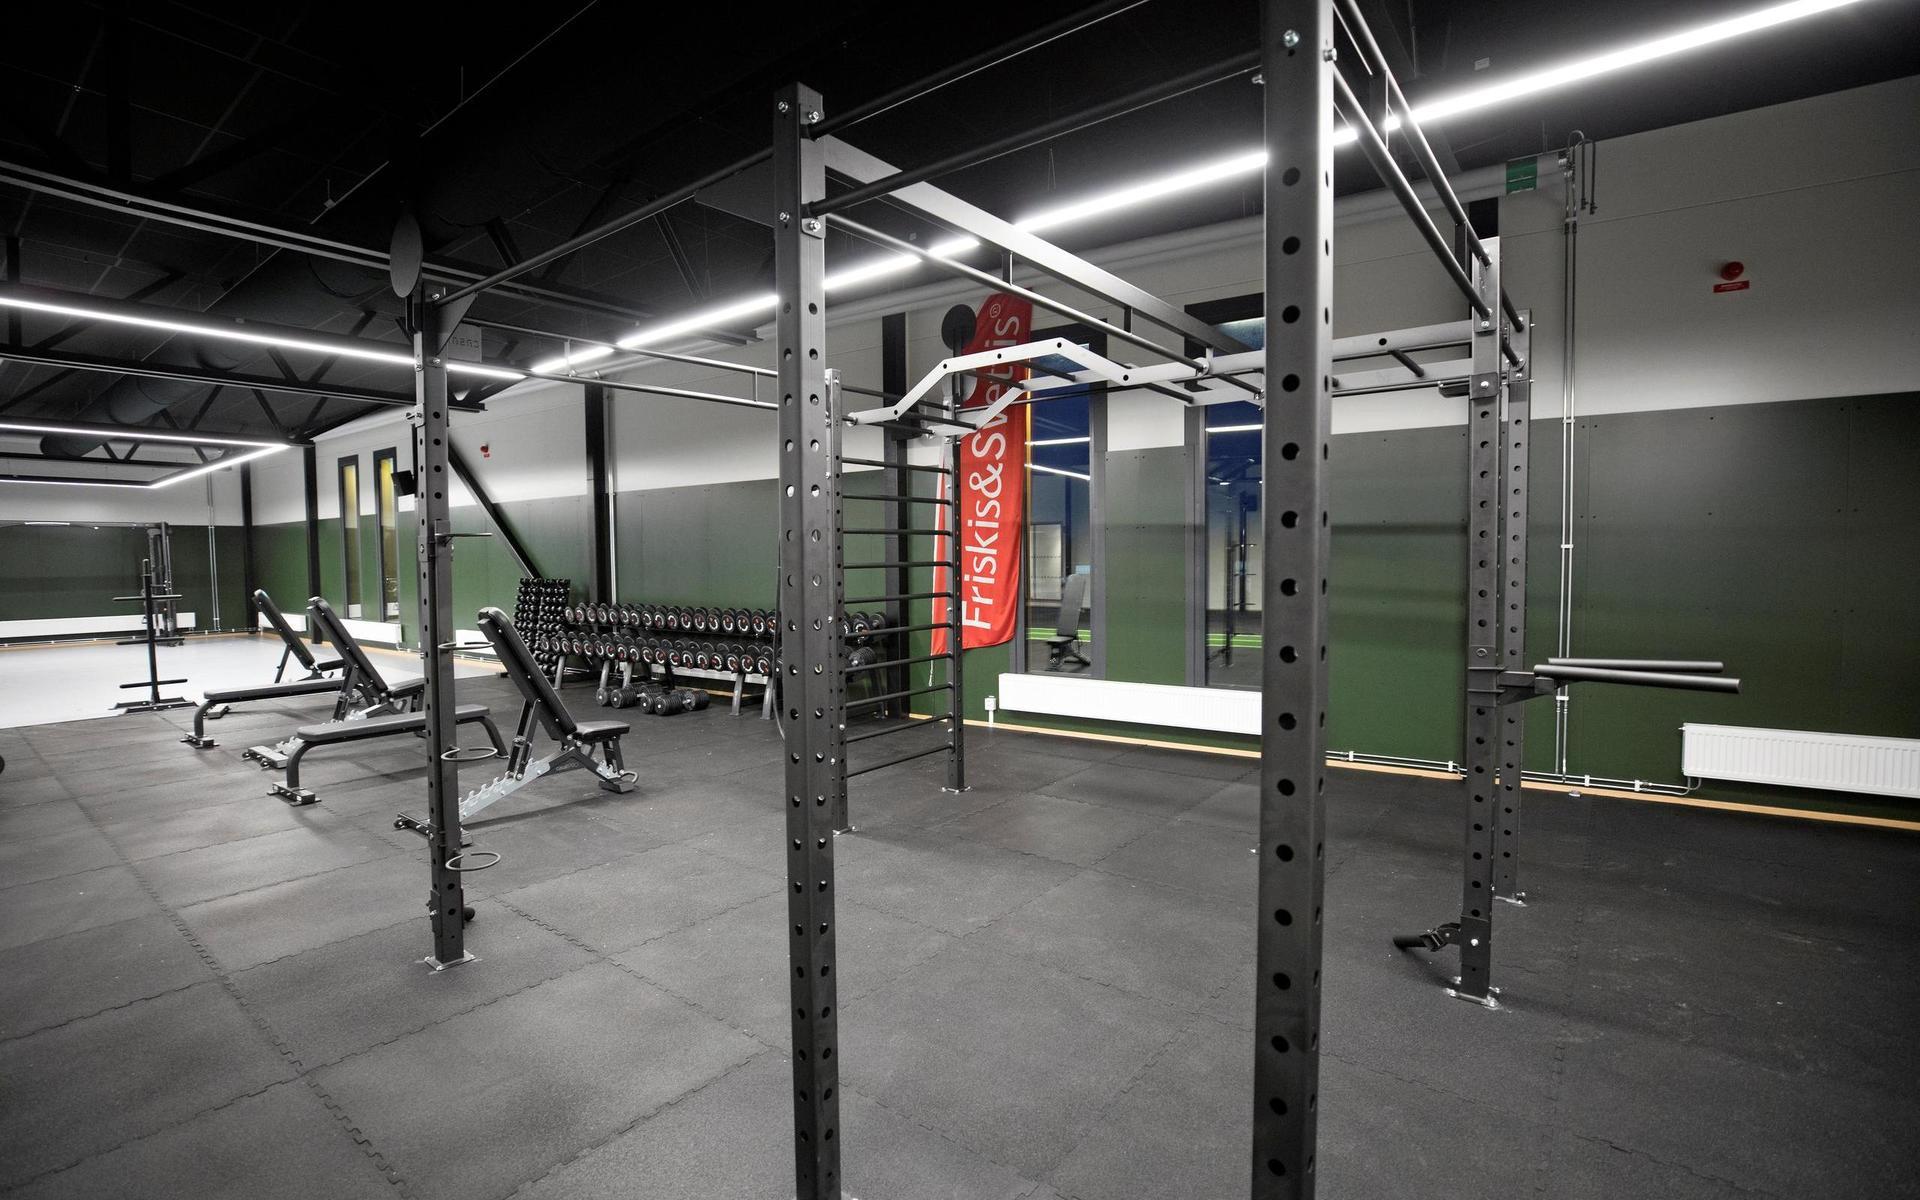 Eftersom gymmet är omkring 400 kvadratmeter stort får man plats med nya maskiner och redskap man inte kunde ha tidigare.